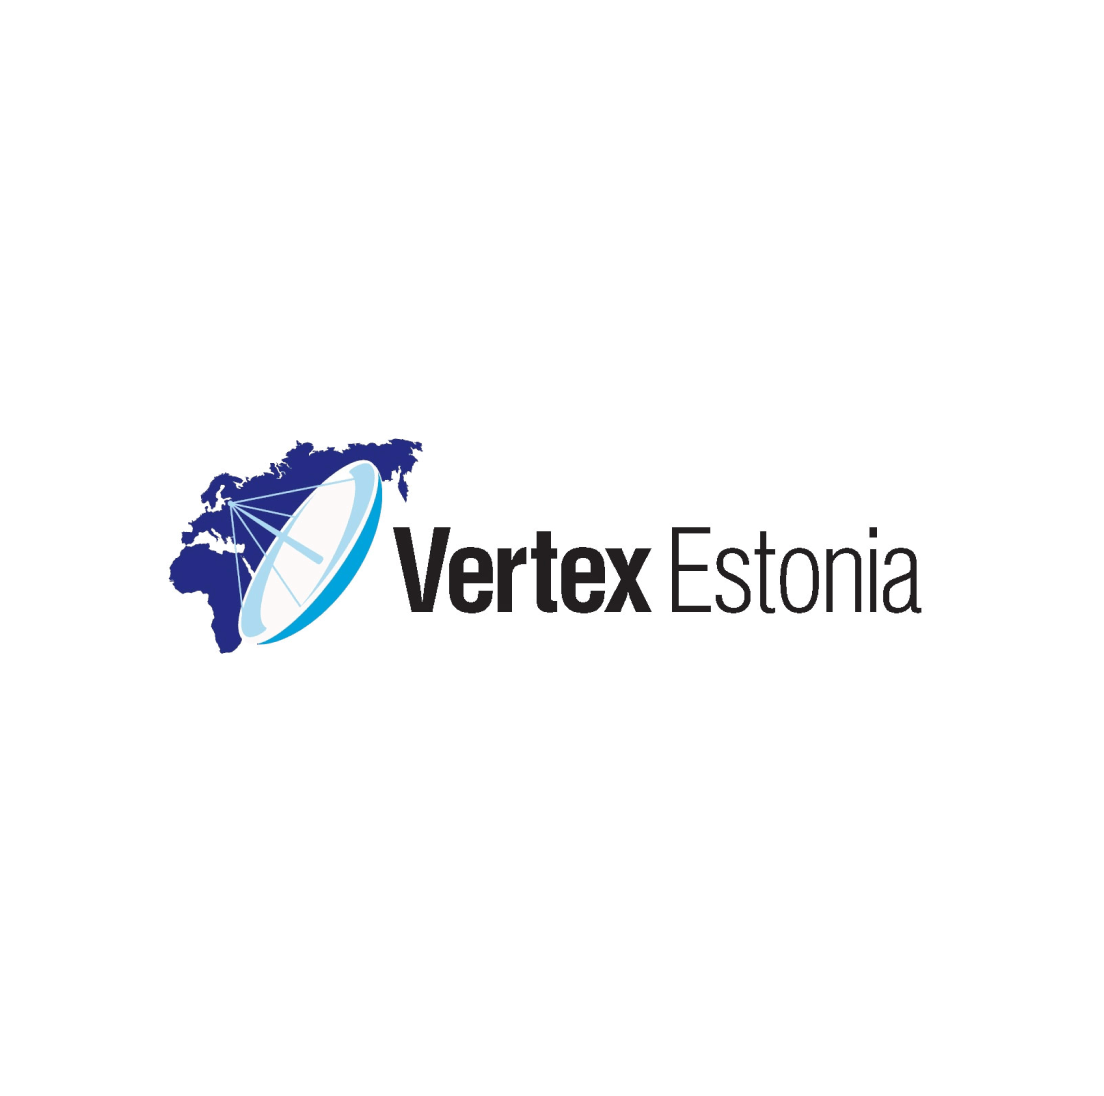 Vertex Estonia